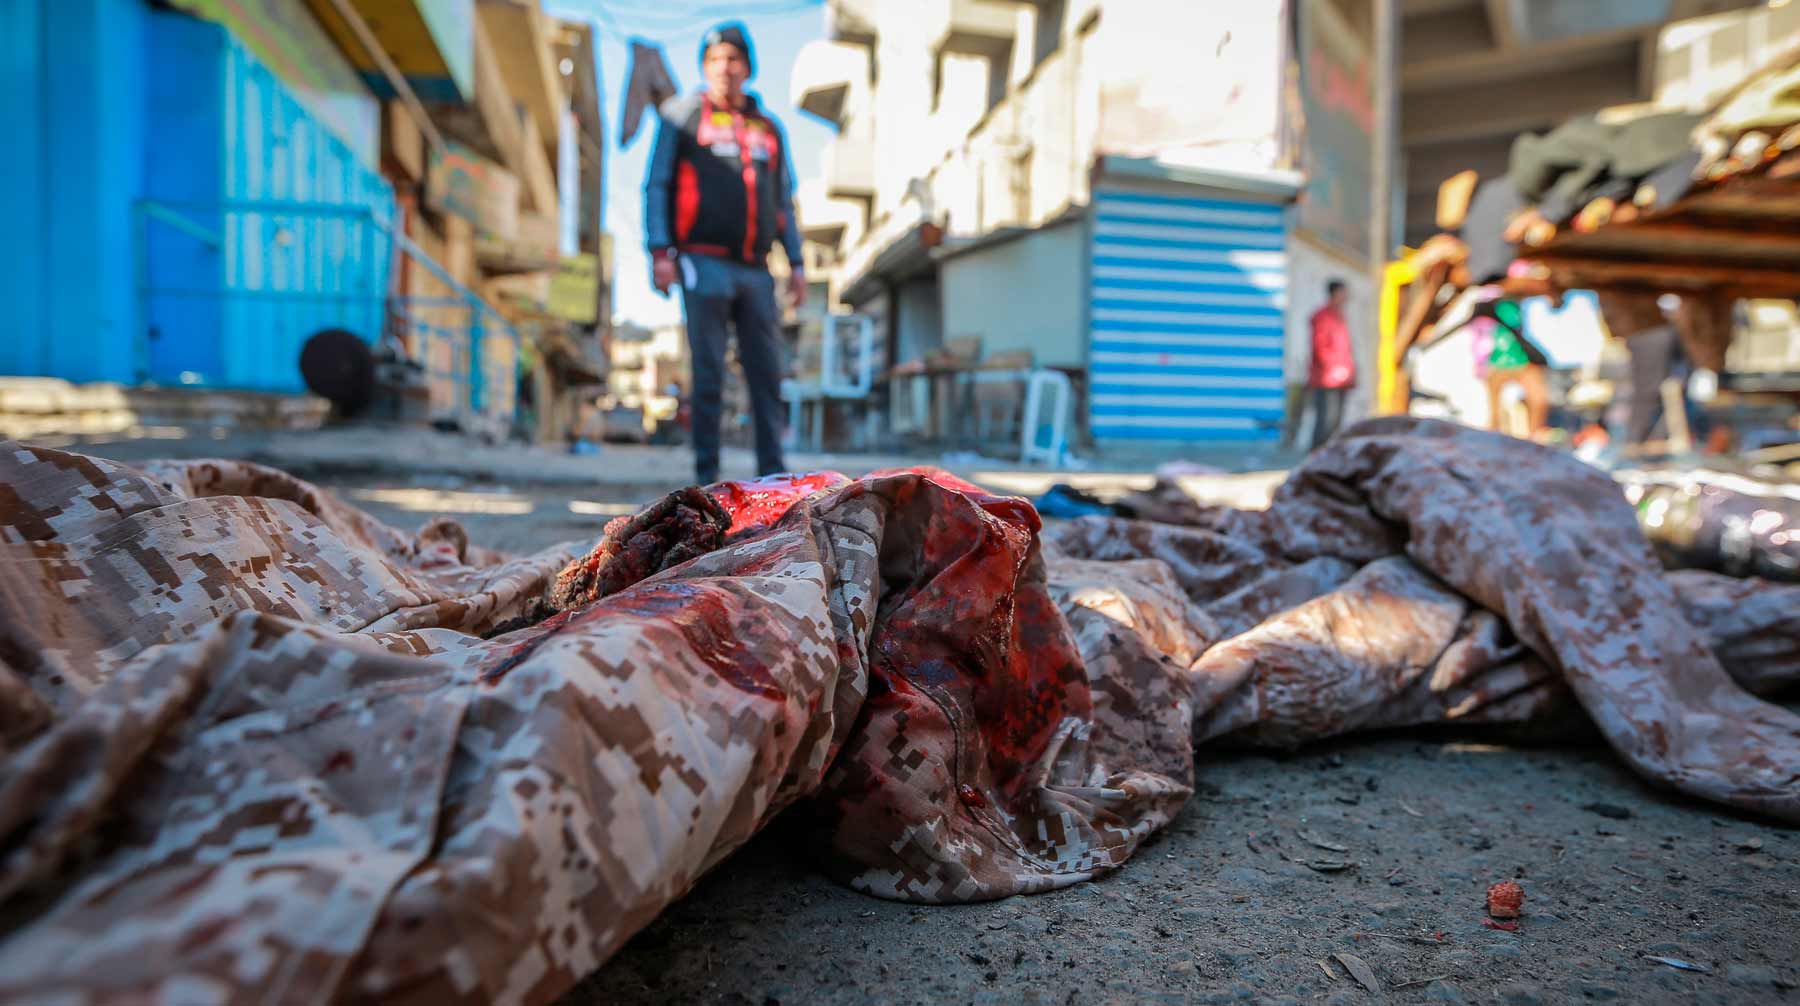 Атаку совершили террористы-смертники Фото: © Global Look Press / Ameer Al Mohammedaw